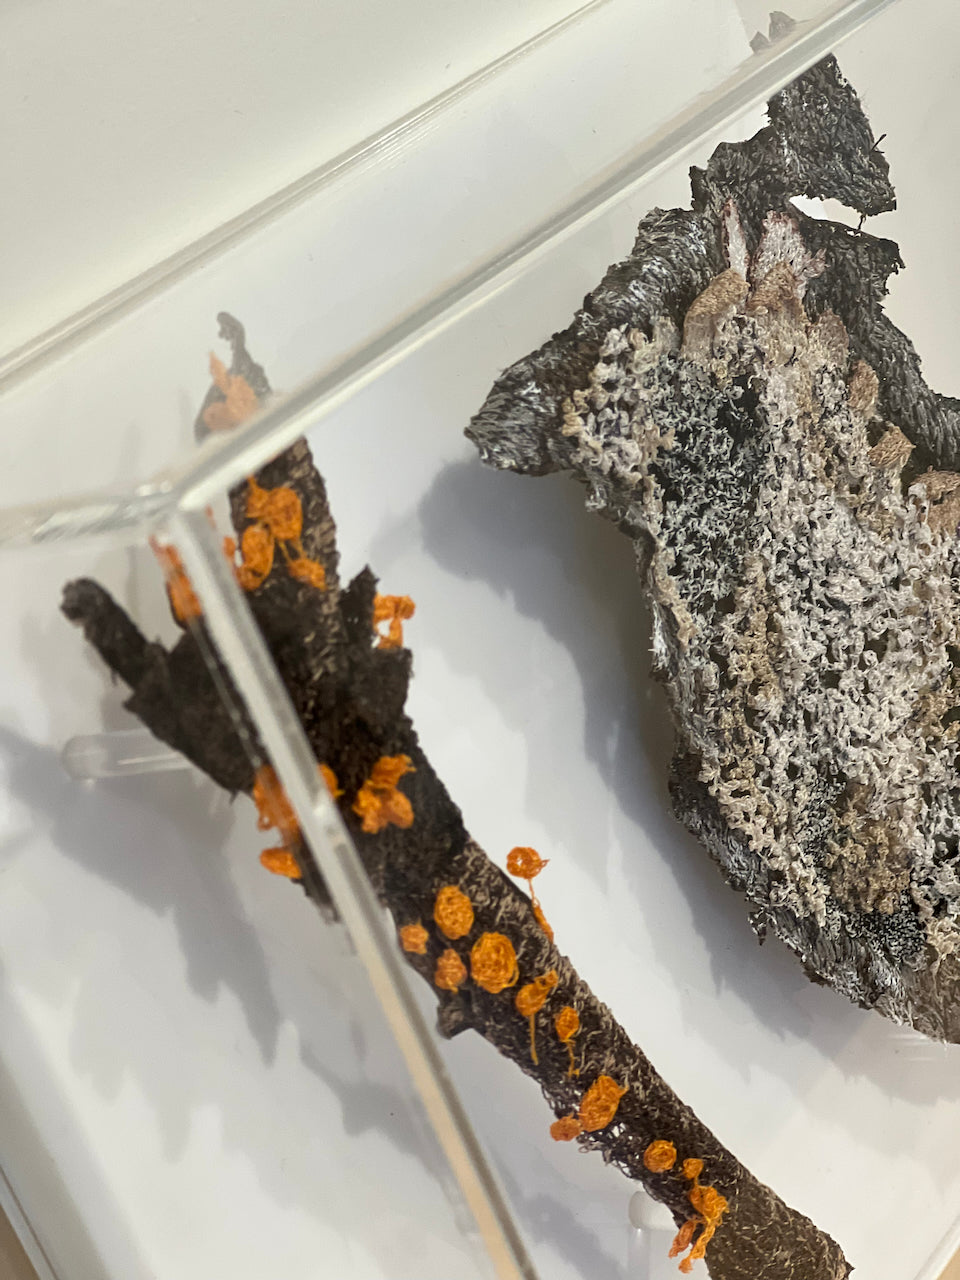 Orange pore fungi and lichen 3D sculptural embroidery.